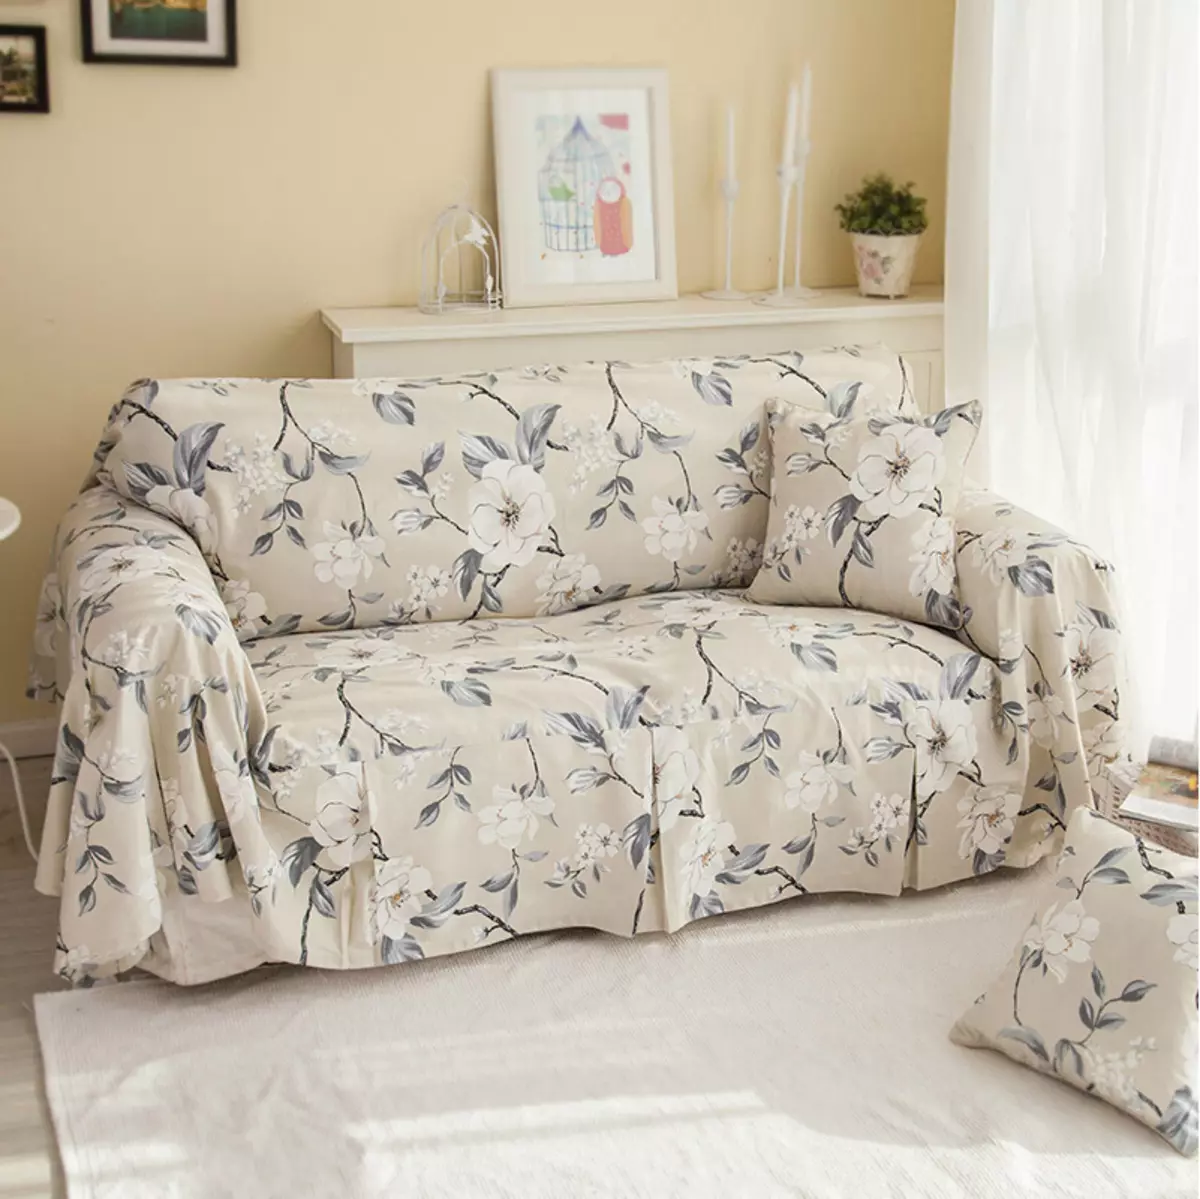 Kanepede Dava IKEA: Kol dayamaları olmayan köşe kanepeleri için yatak örtüleri seçimi, evrensel kapaklar ve diğer seçenekler 8963_39